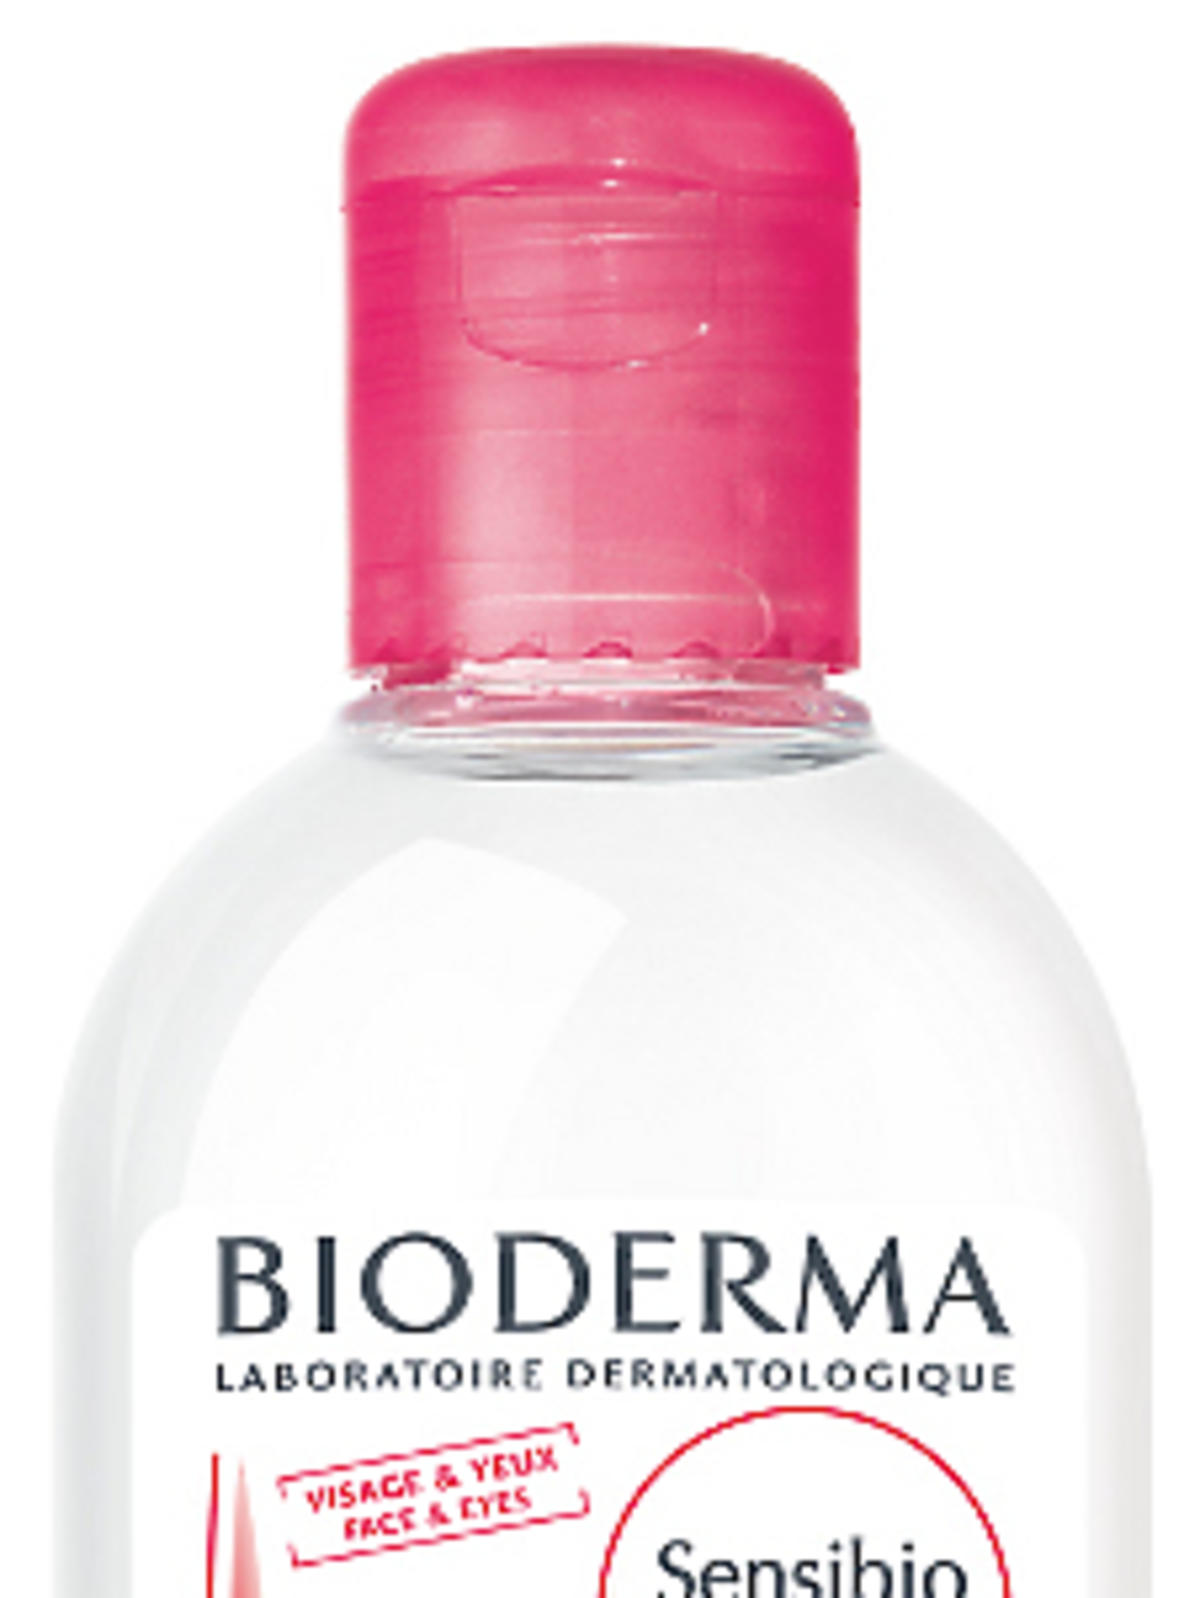 Płyn micelarny do oczyszczania i demakijażu twarzy H2O Sensibio Bioderma, 59zł